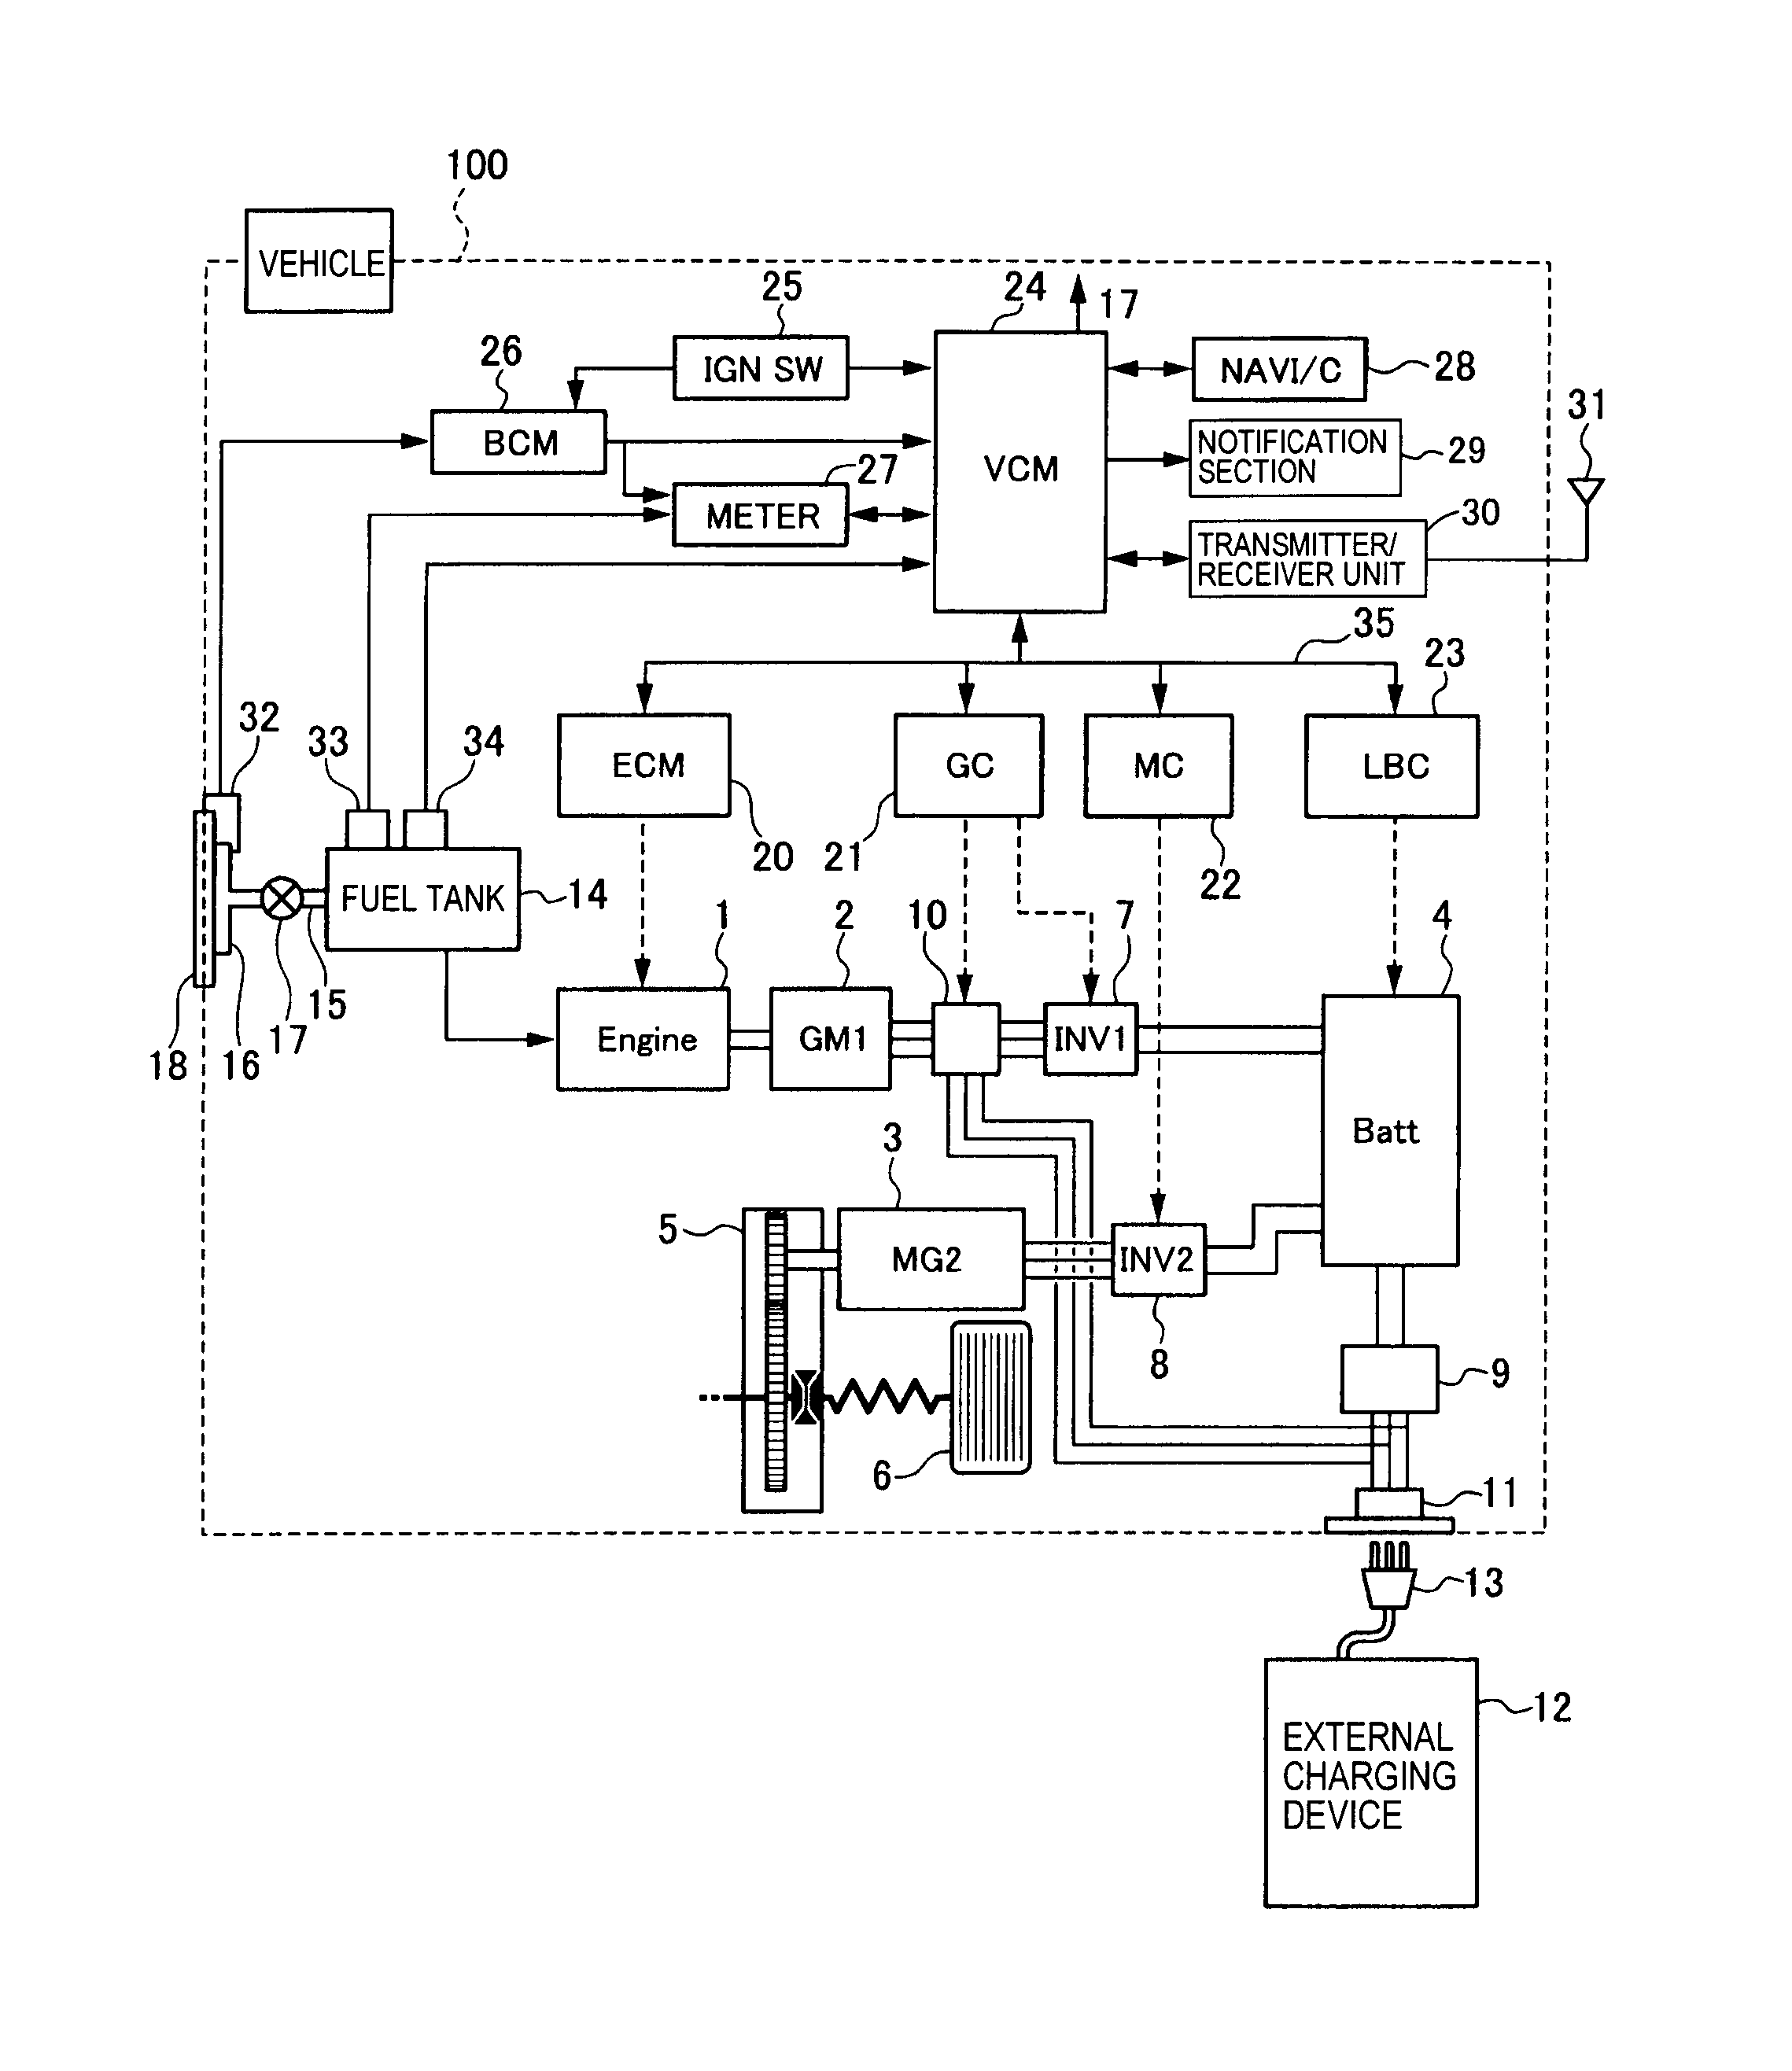 white rodgers aquastat wiring diagram